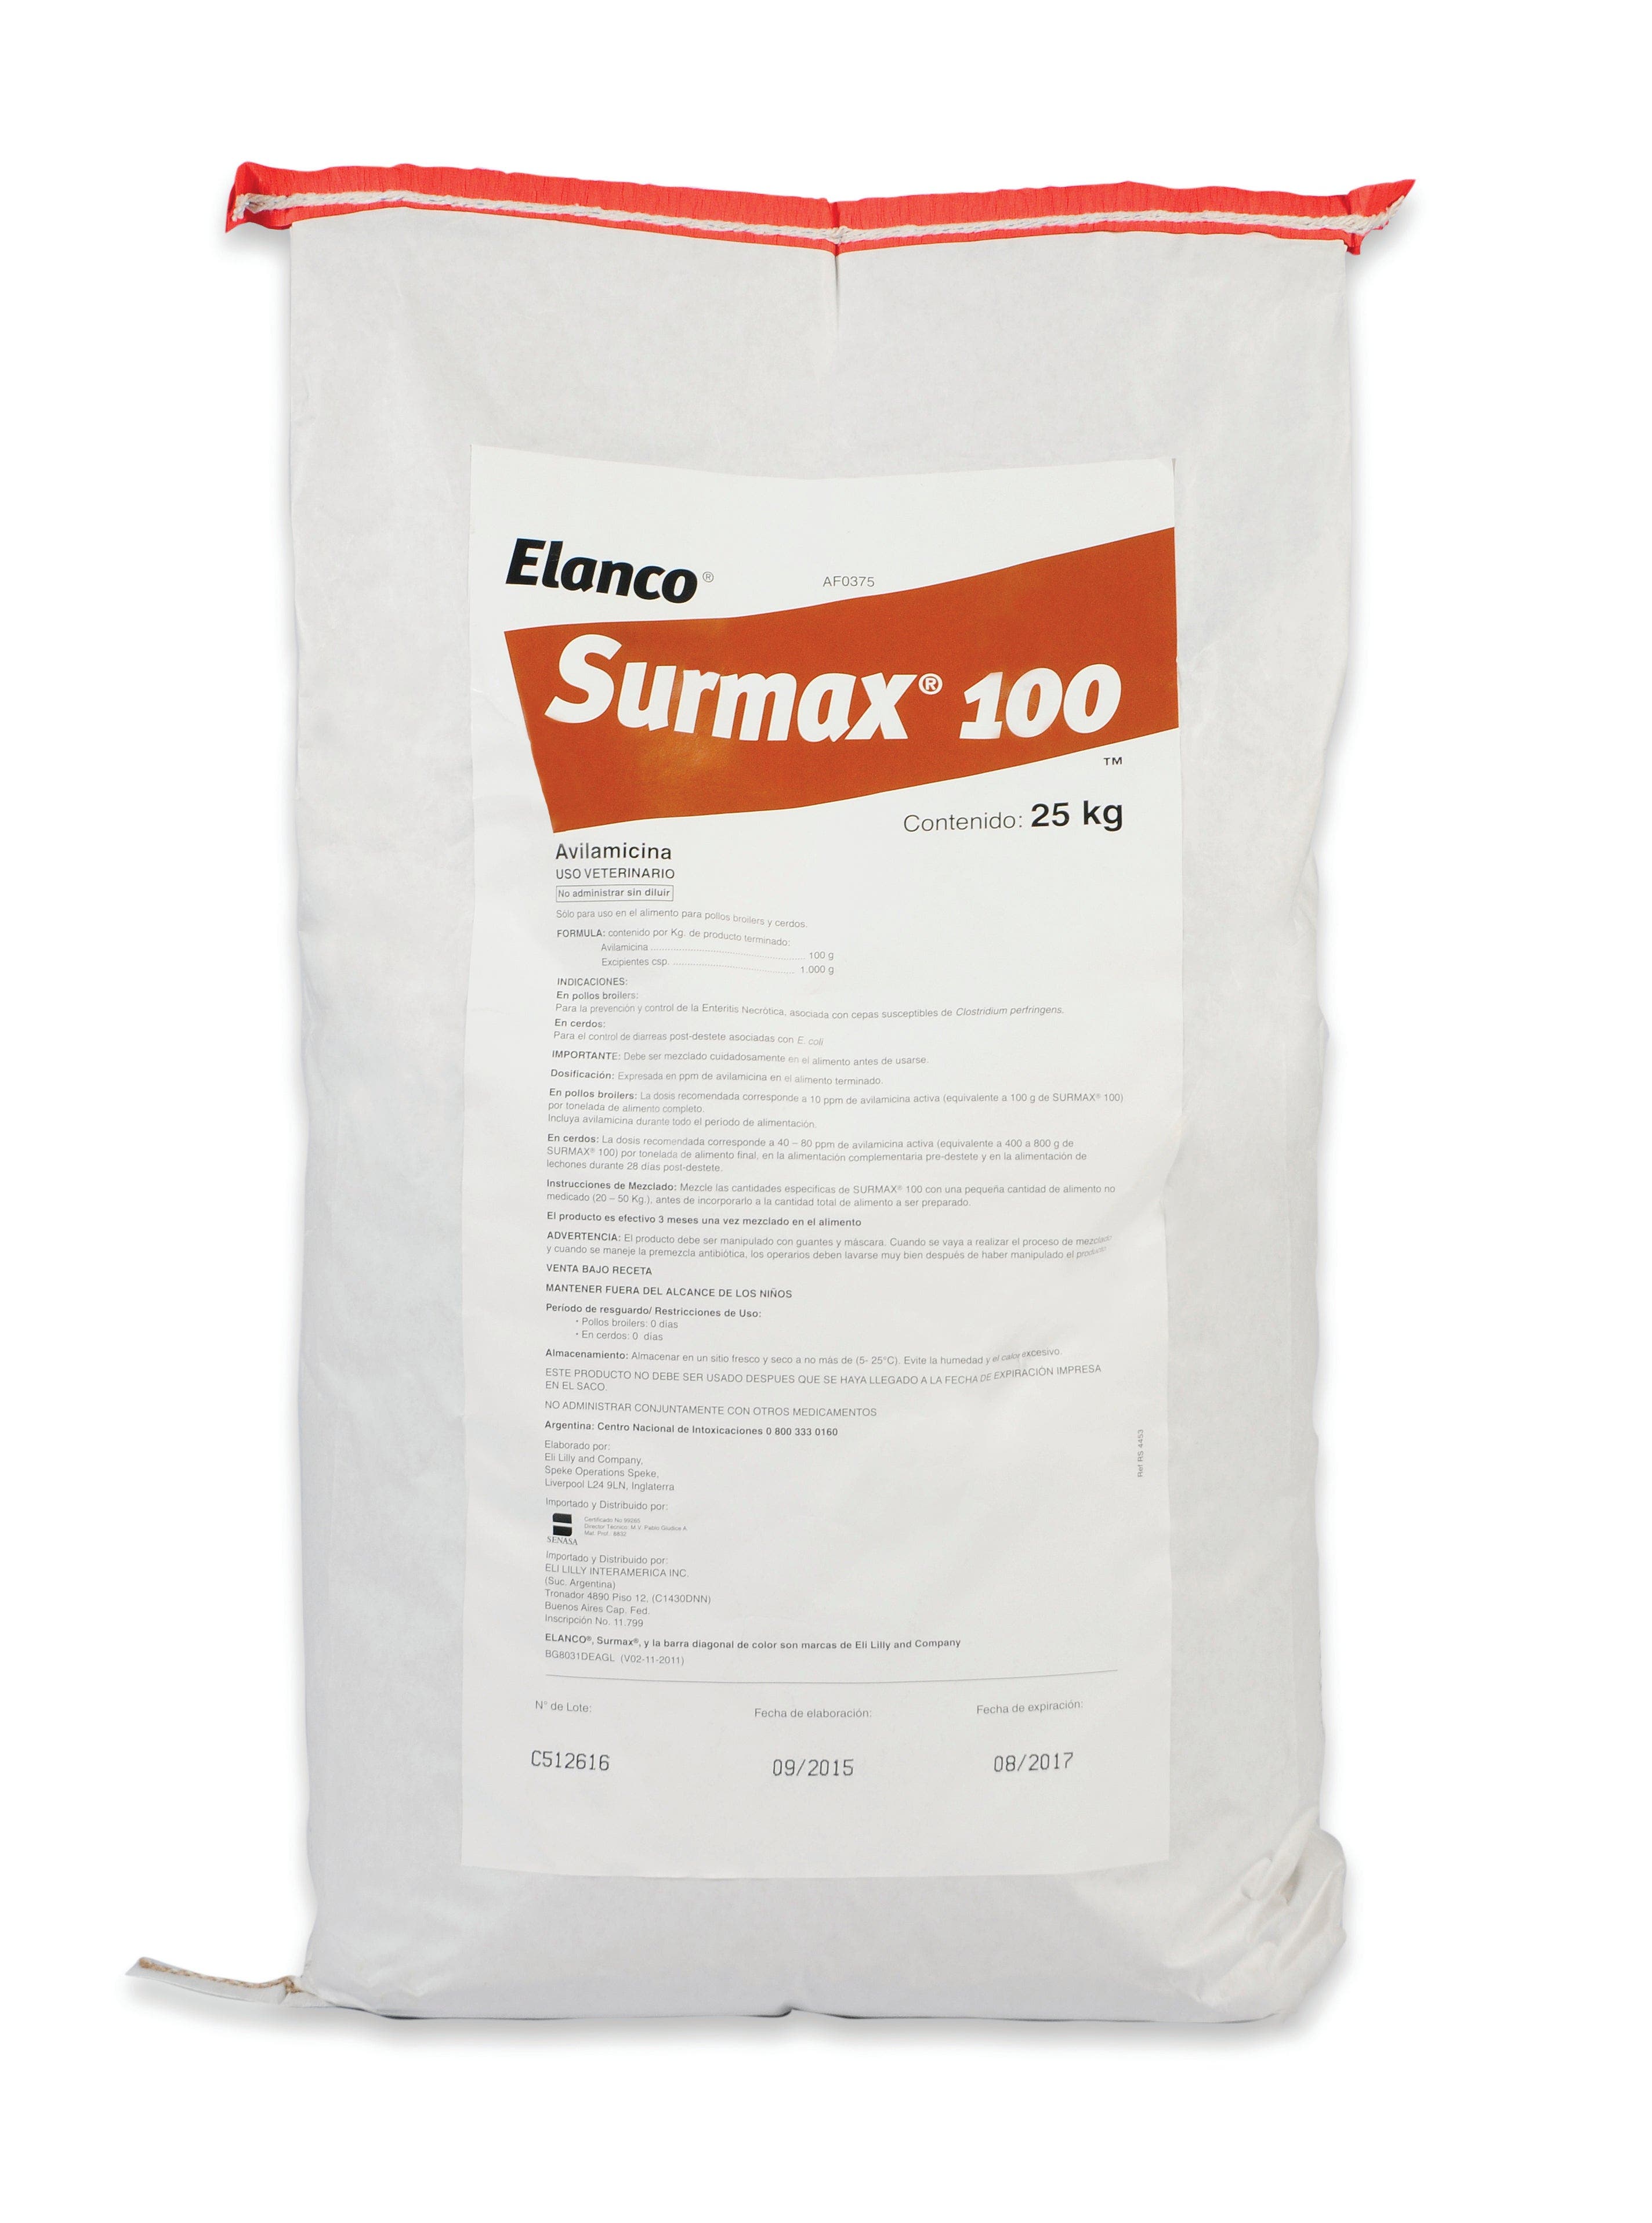 Surmax packaging 